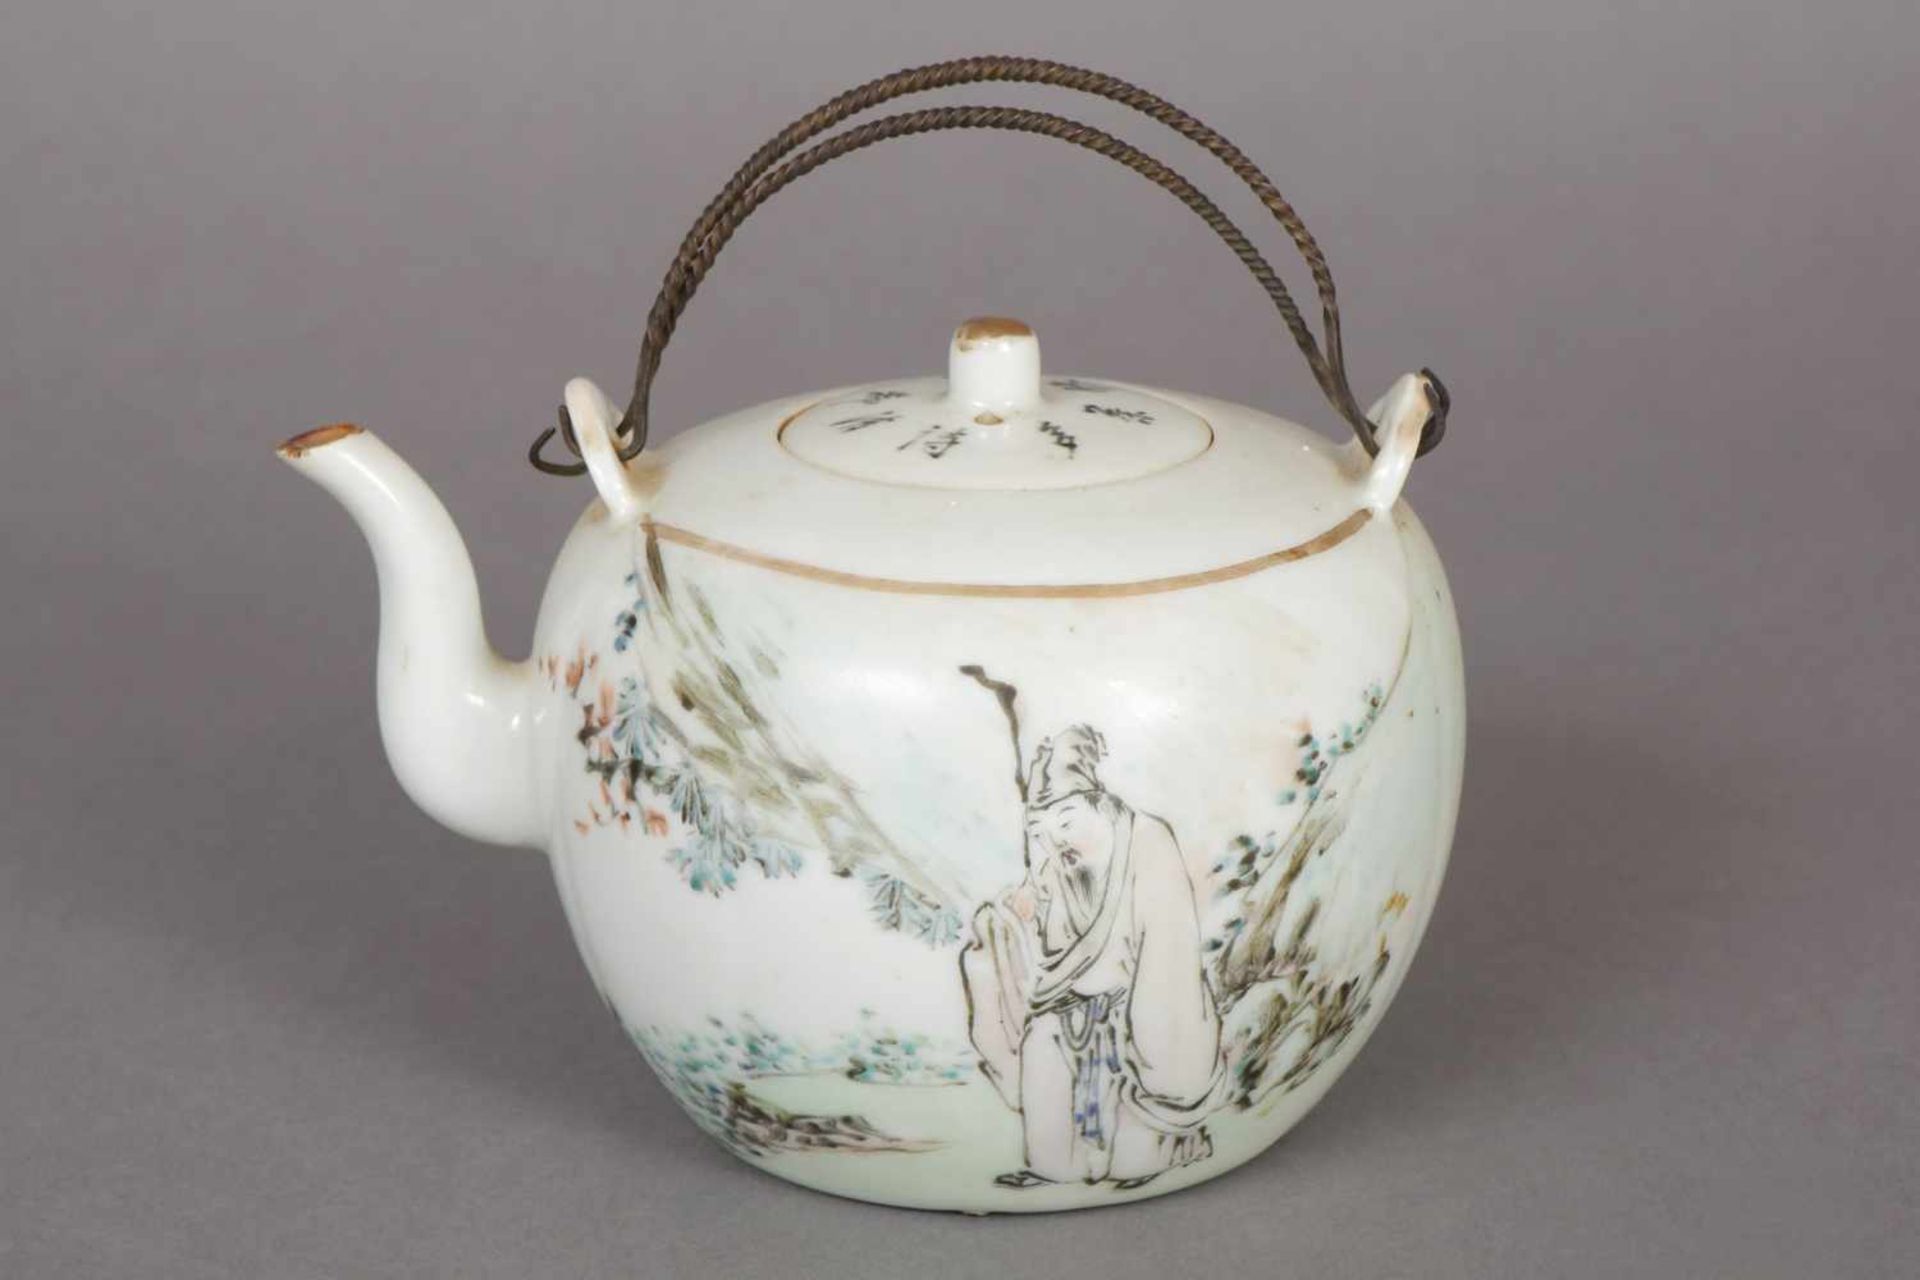 Chinesisches Teekännchen Porzellan, hell glasiert, wohl Republikzeit (1912-1949), bauchiger